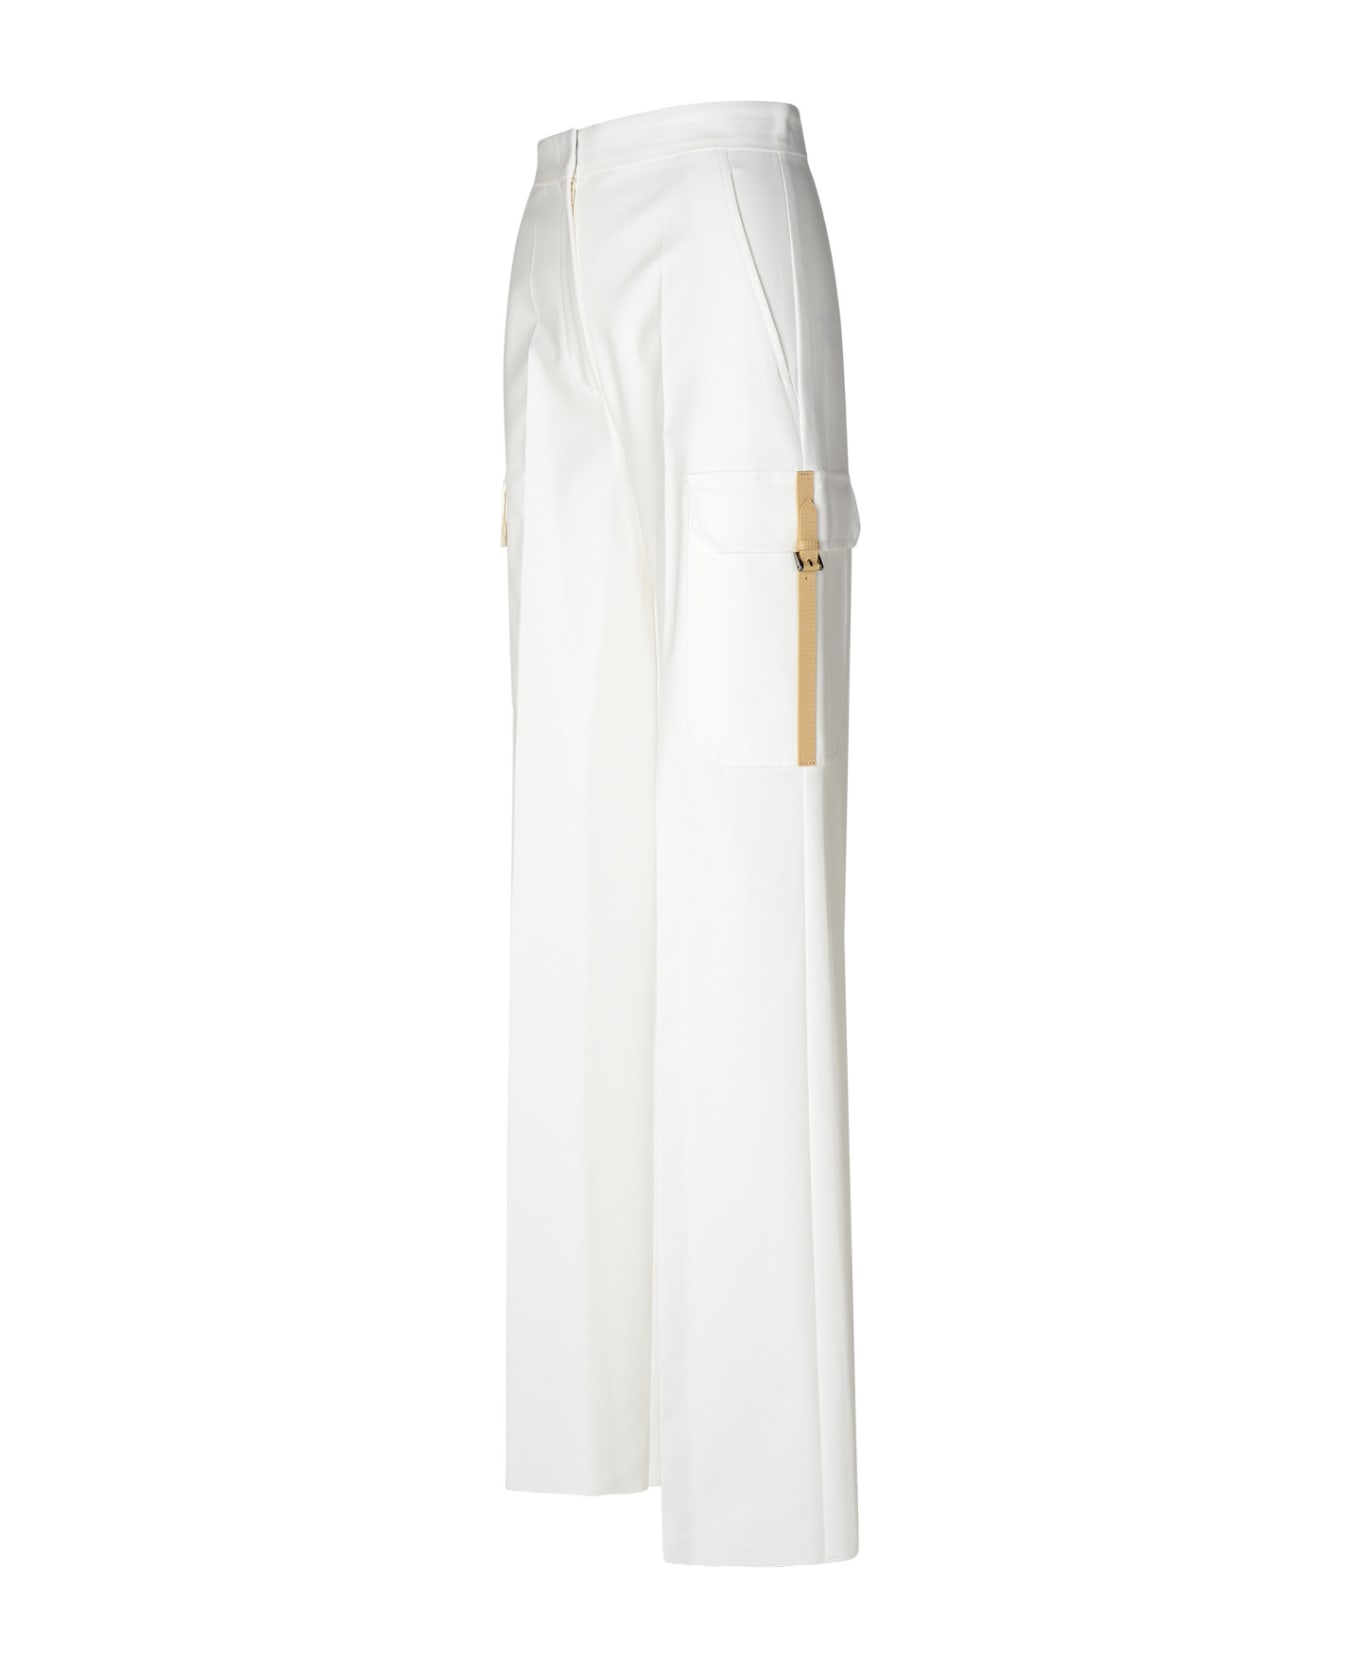 Max Mara 'edda' White Cotton Blend Cargo Pants - White